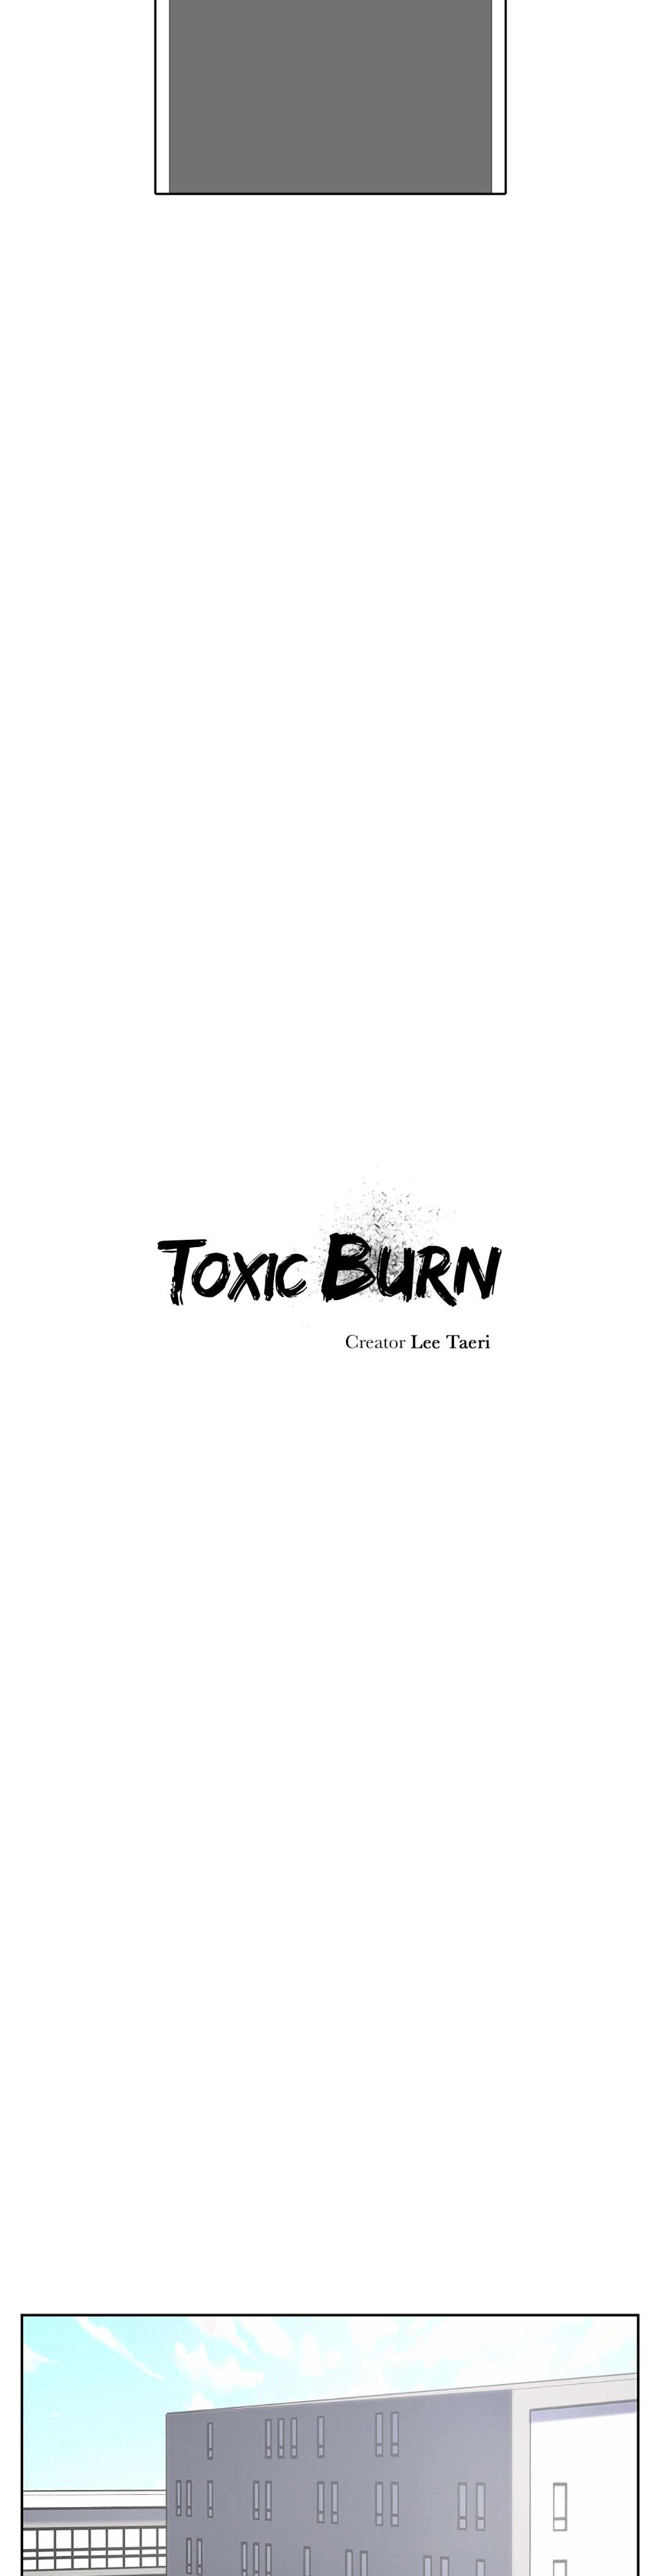 Toxic Burn image